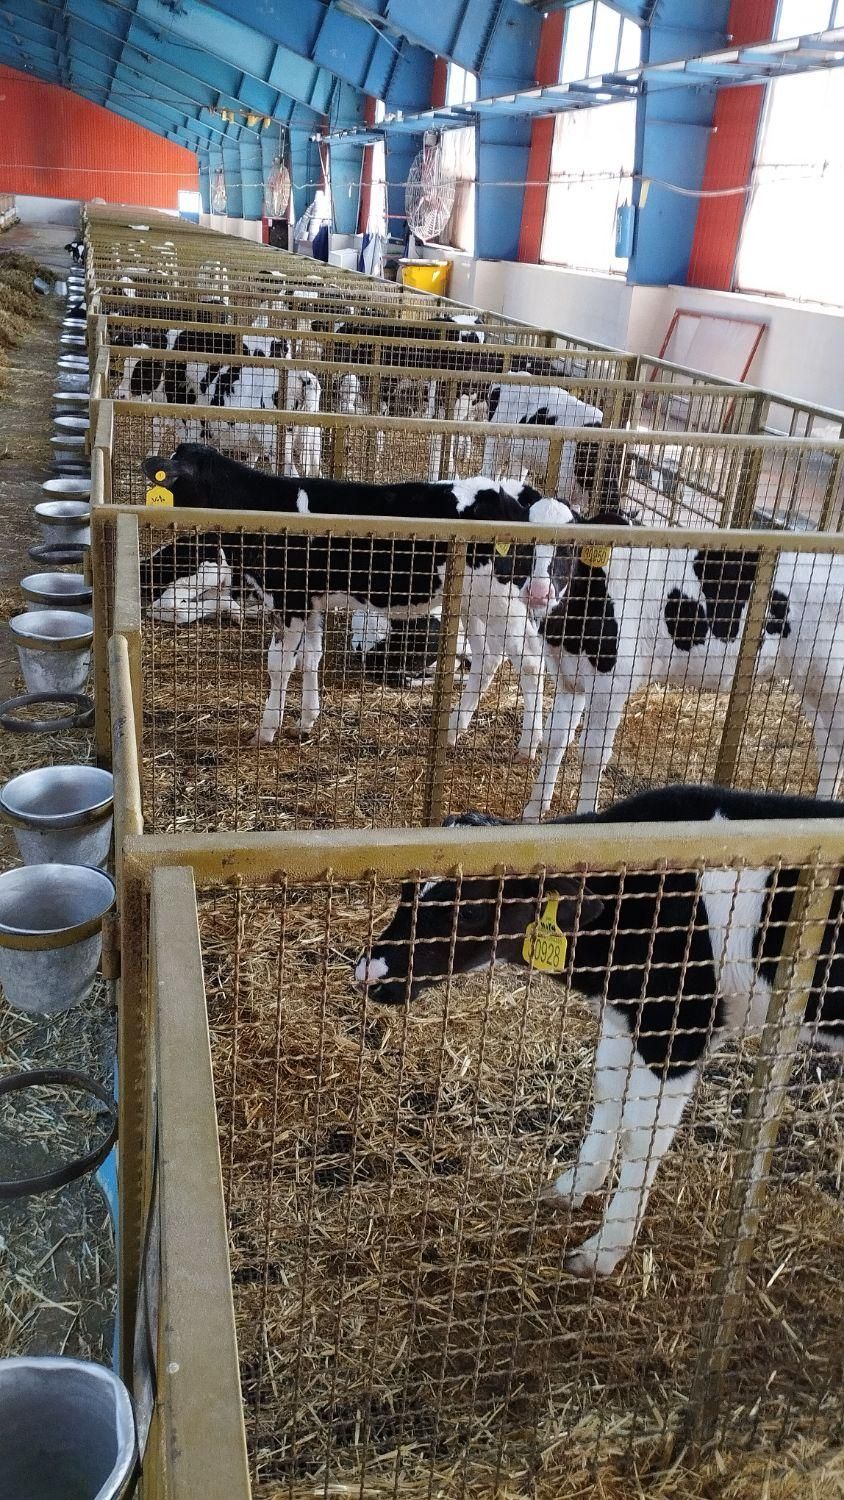 گوساله شیرخواره نردرجه یک ۹۰راس قزوین|حیوانات مزرعه|ابهر, |دیوار